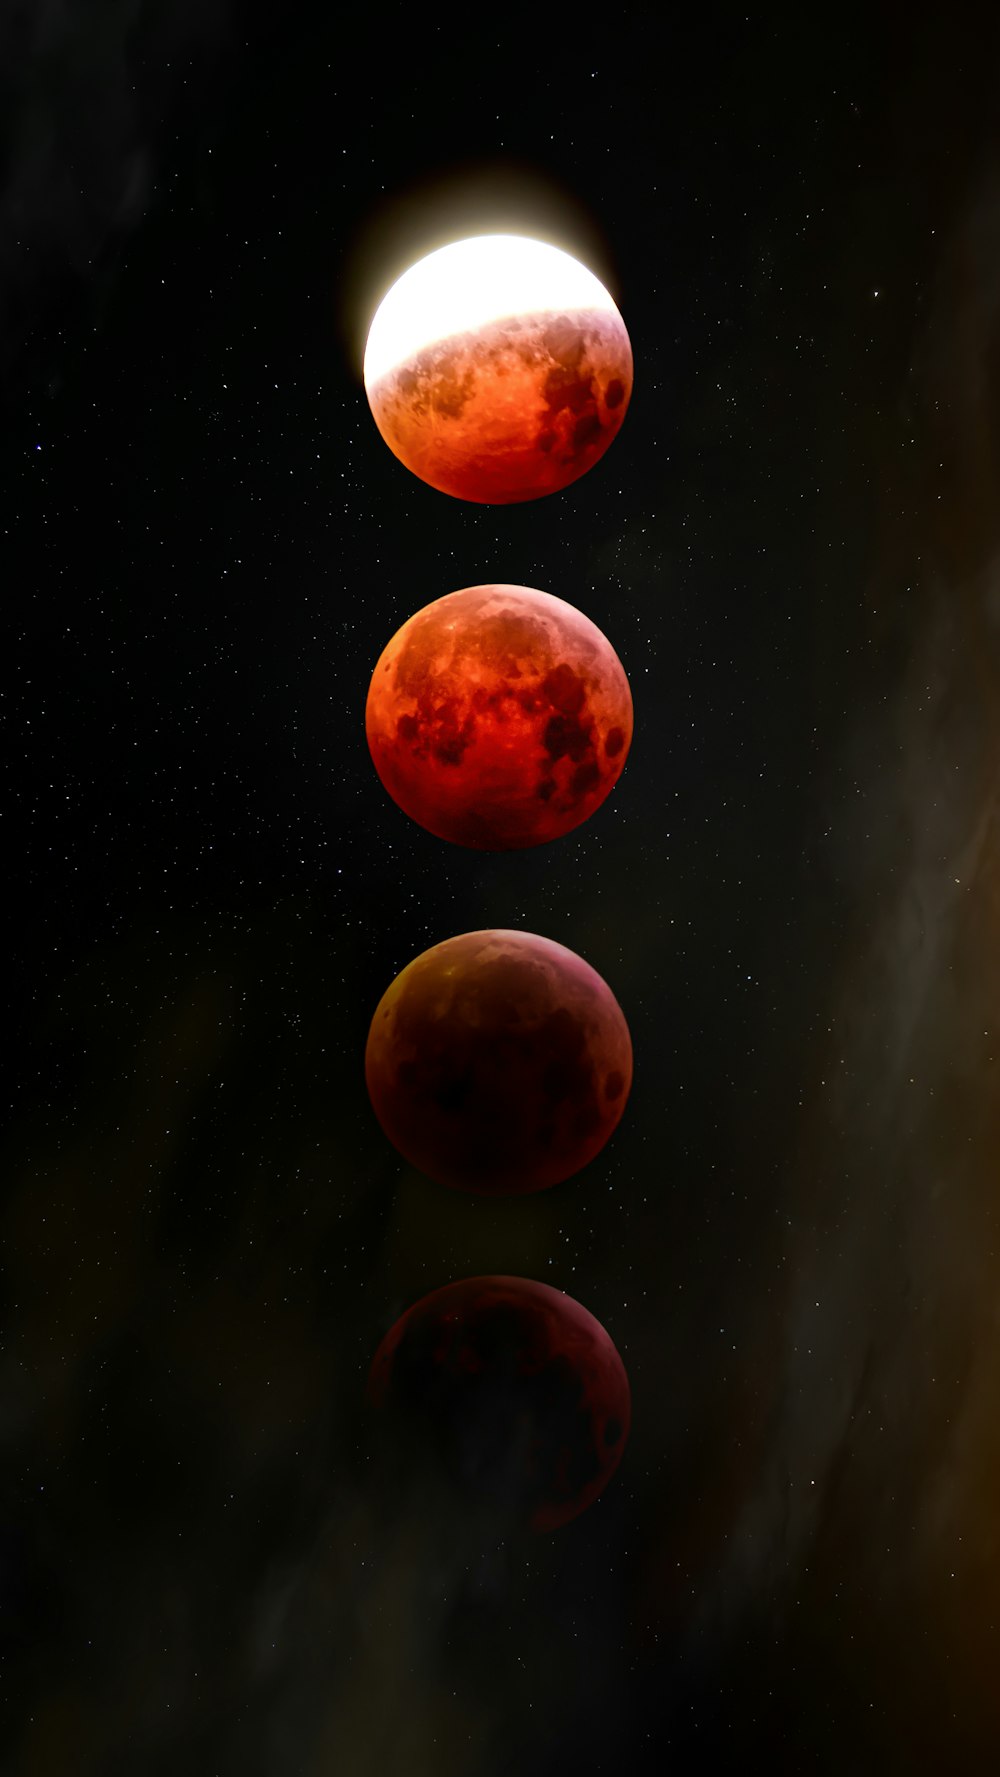 Un grupo de planetas rojos flotando en el cielo